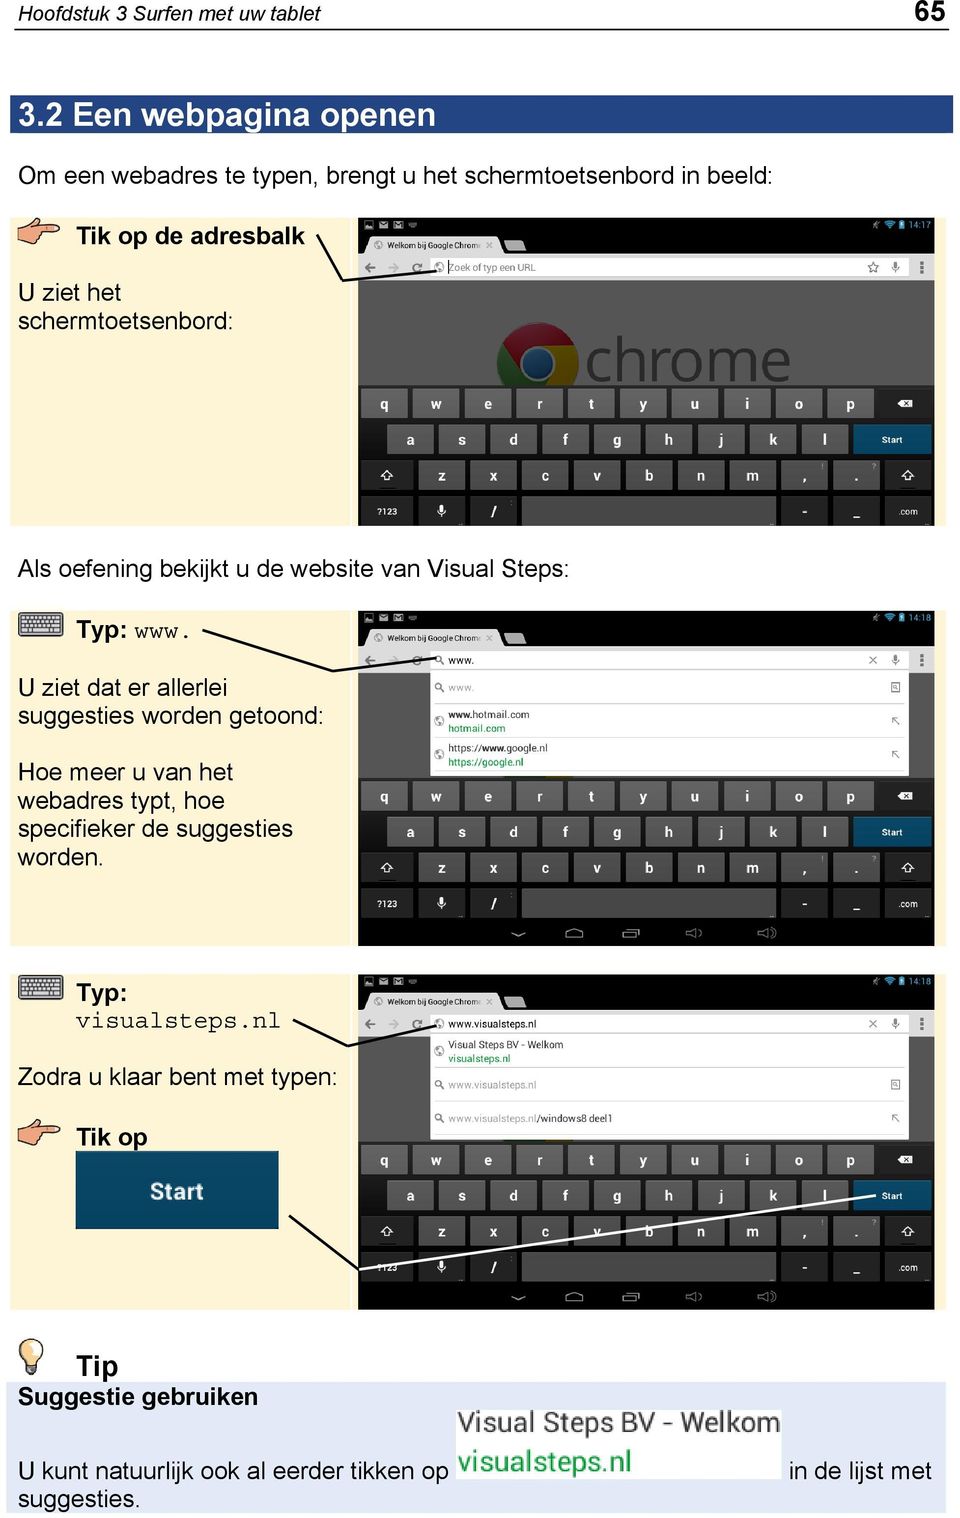 schermtoetsenbord: Als oefening bekijkt u de website van Visual Steps: Typ: www.